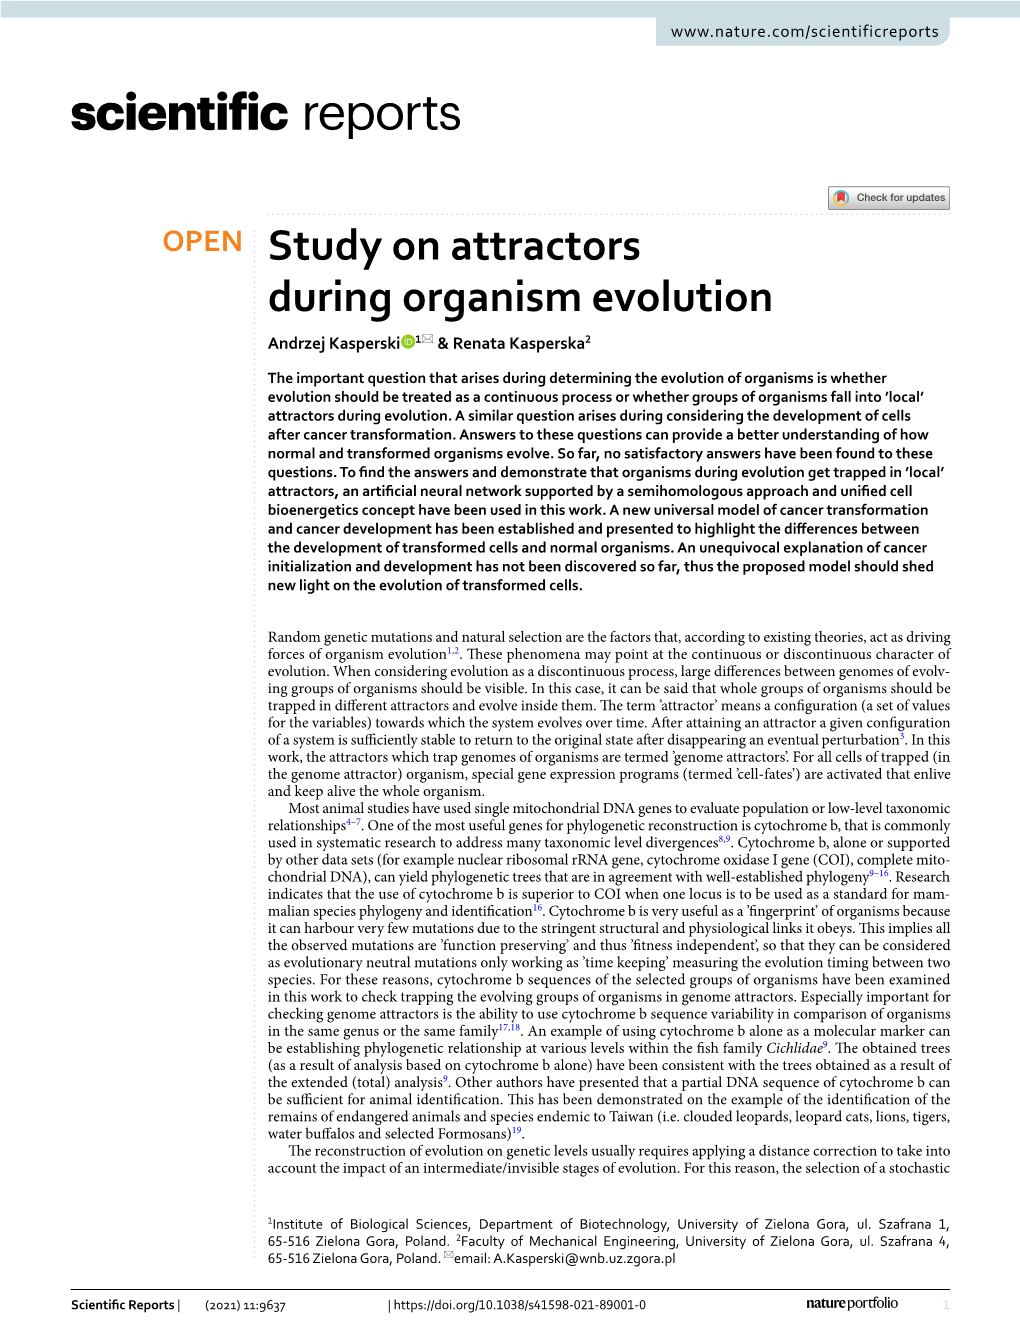 Study on Attractors During Organism Evolution Andrzej Kasperski 1* & Renata Kasperska2